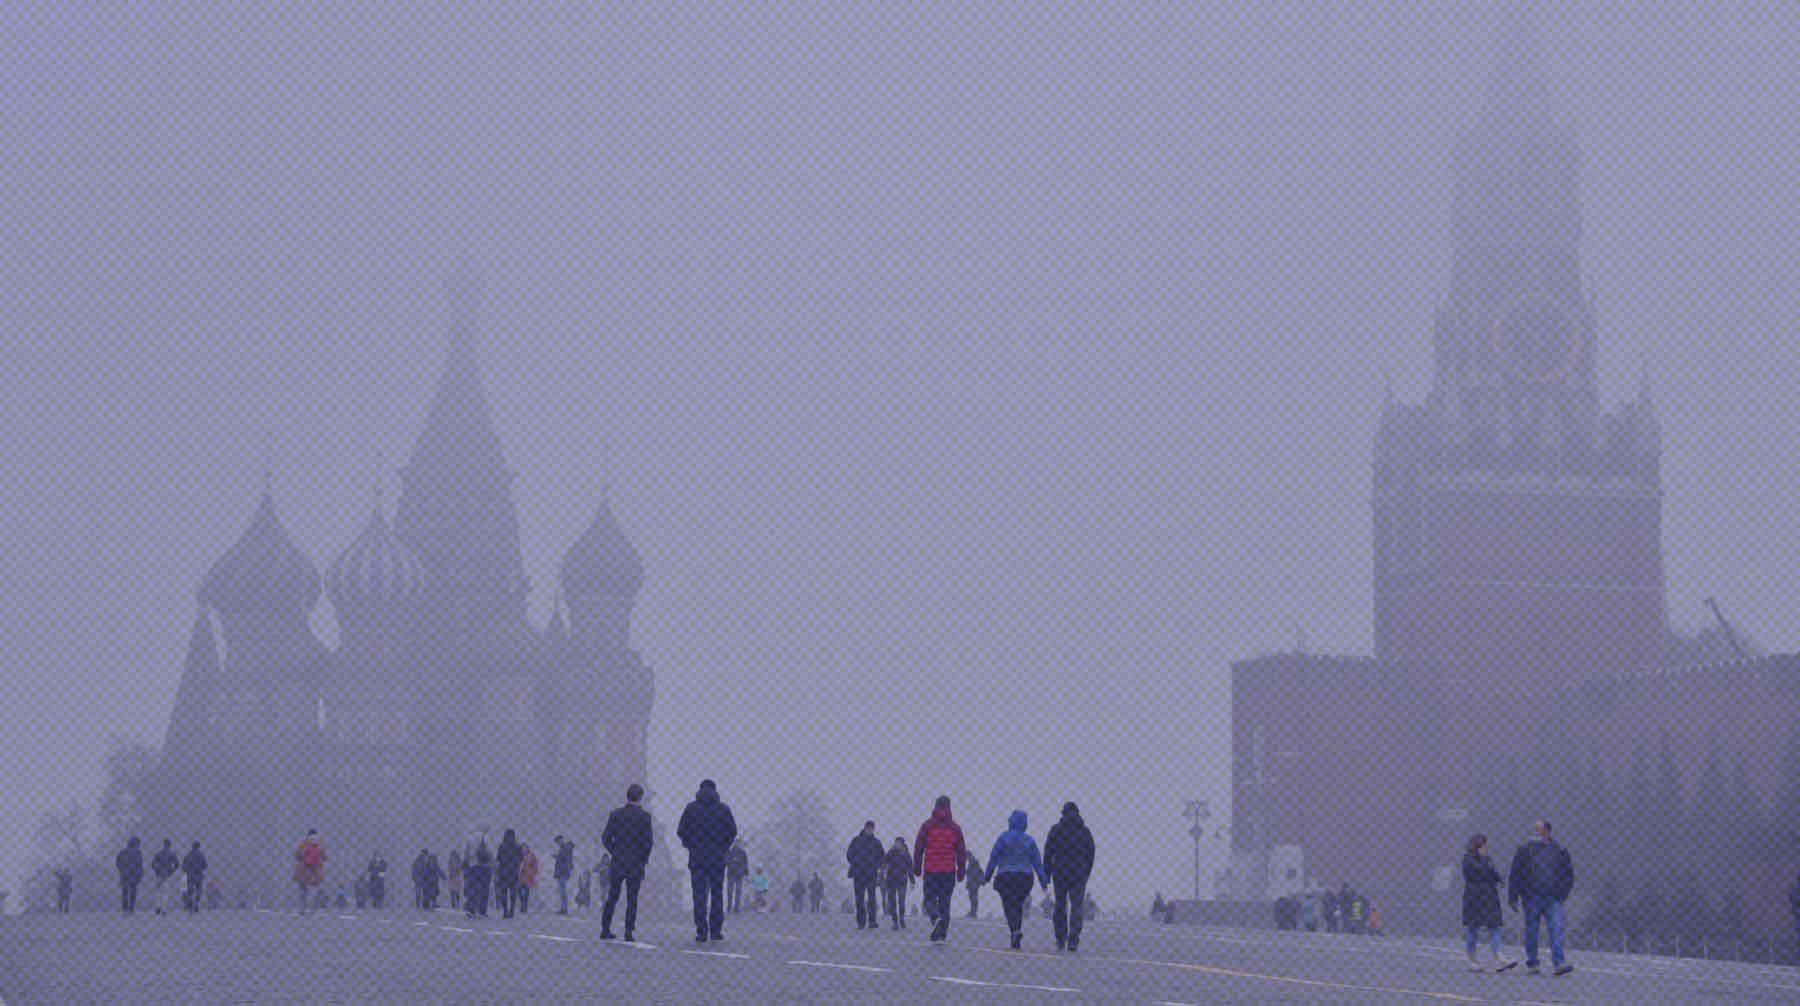 В Москве из-за штормового предупреждения 30 ноября были закрыты парк Горького и зоопарк Фото: Global Look Press / Комсомольская правда